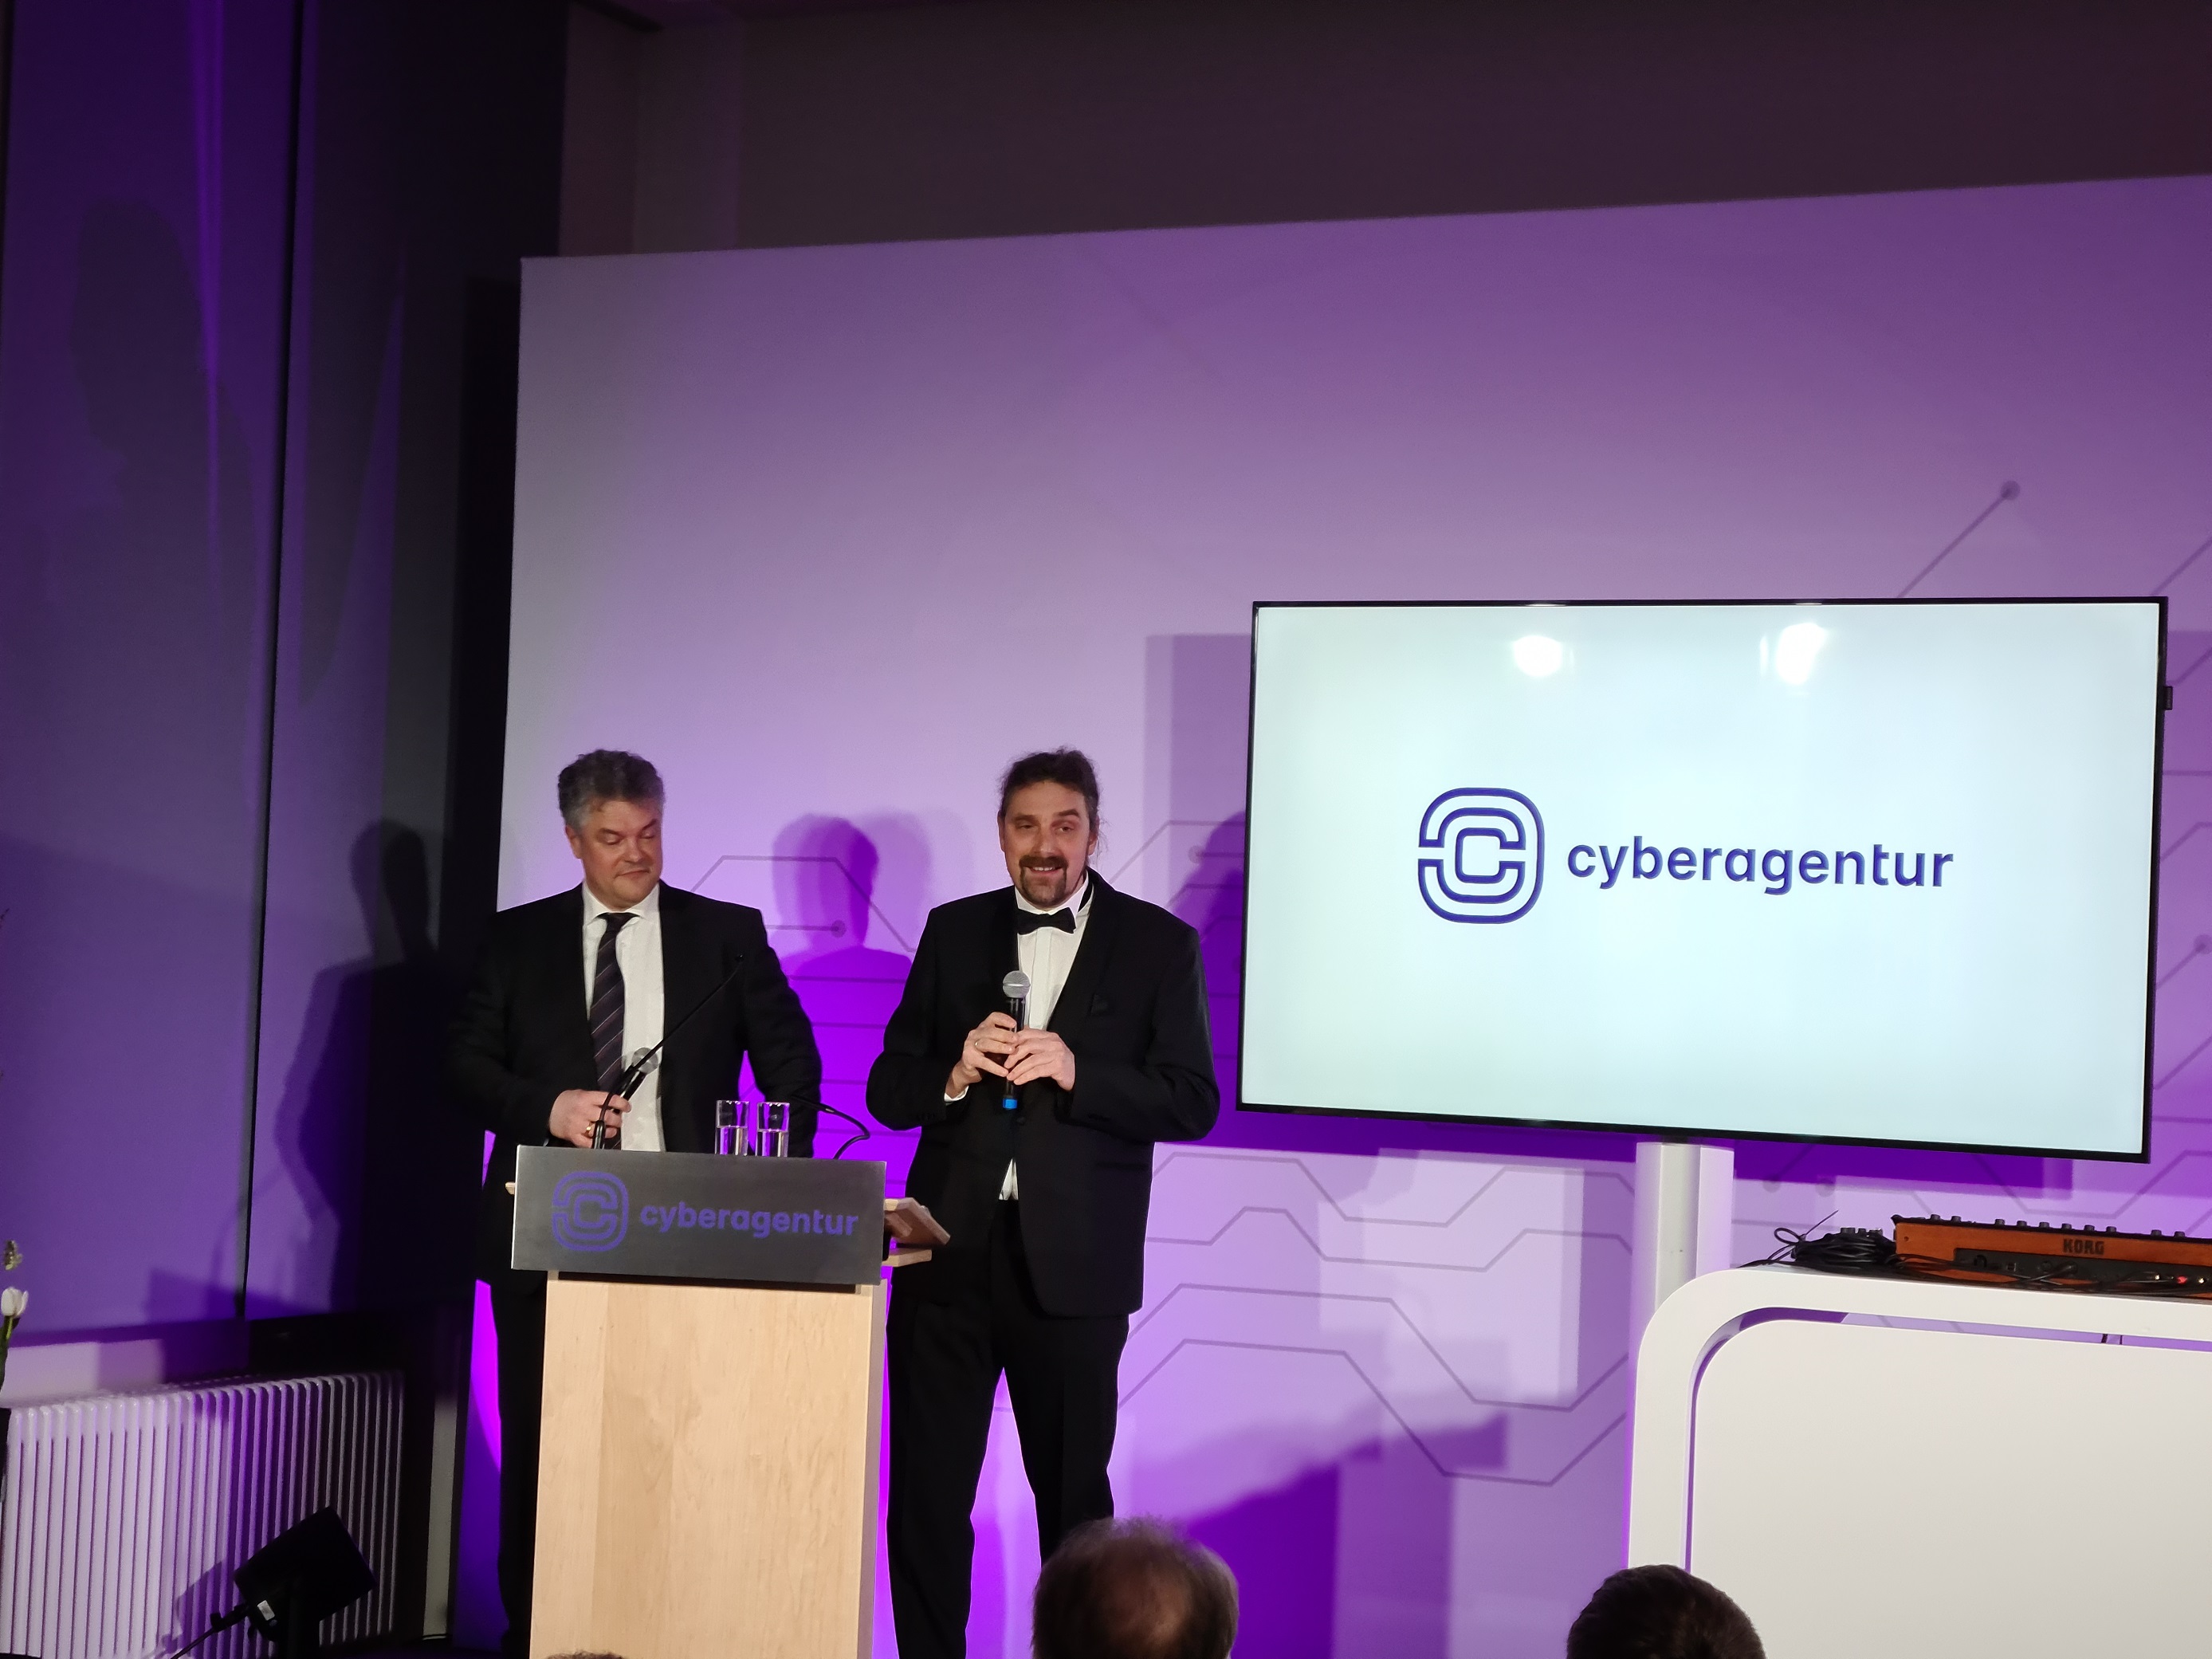 Forschungsdirektor der Cyberagentur, Prof. Dr. Christian Hummert (re.) und der kaufmännische Direktor, Daniel Mayer